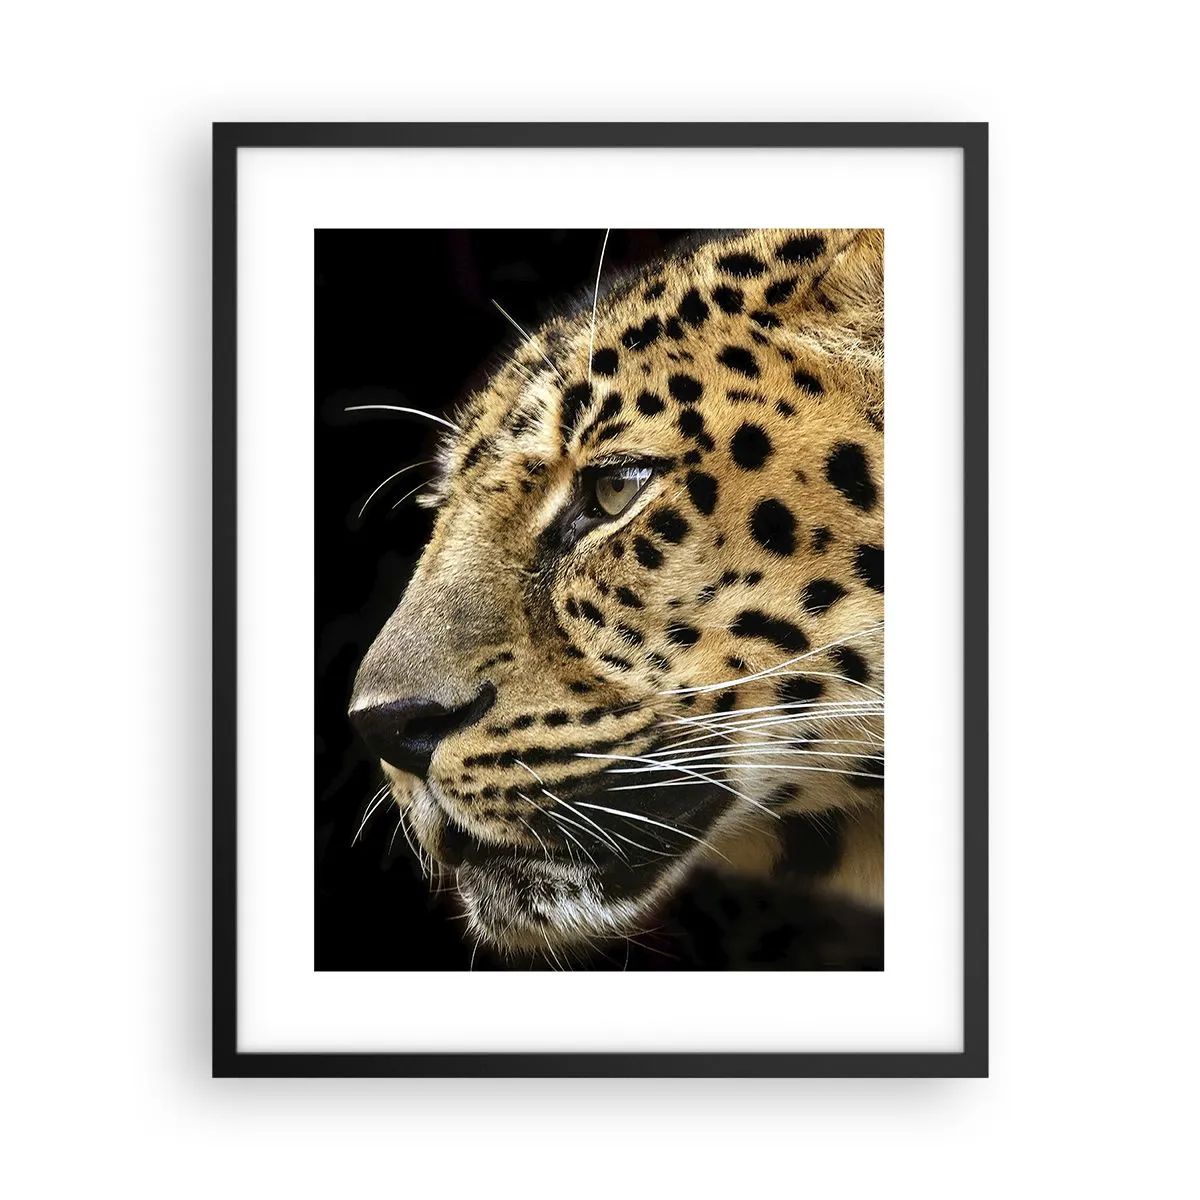 Poster in cornice nera Arttor 40x50 cm - Calmo, concentrato, pronto -  Animali, Leopardo, Africa, Gatto Selvatico, Natura, Per il Salotto, Per la